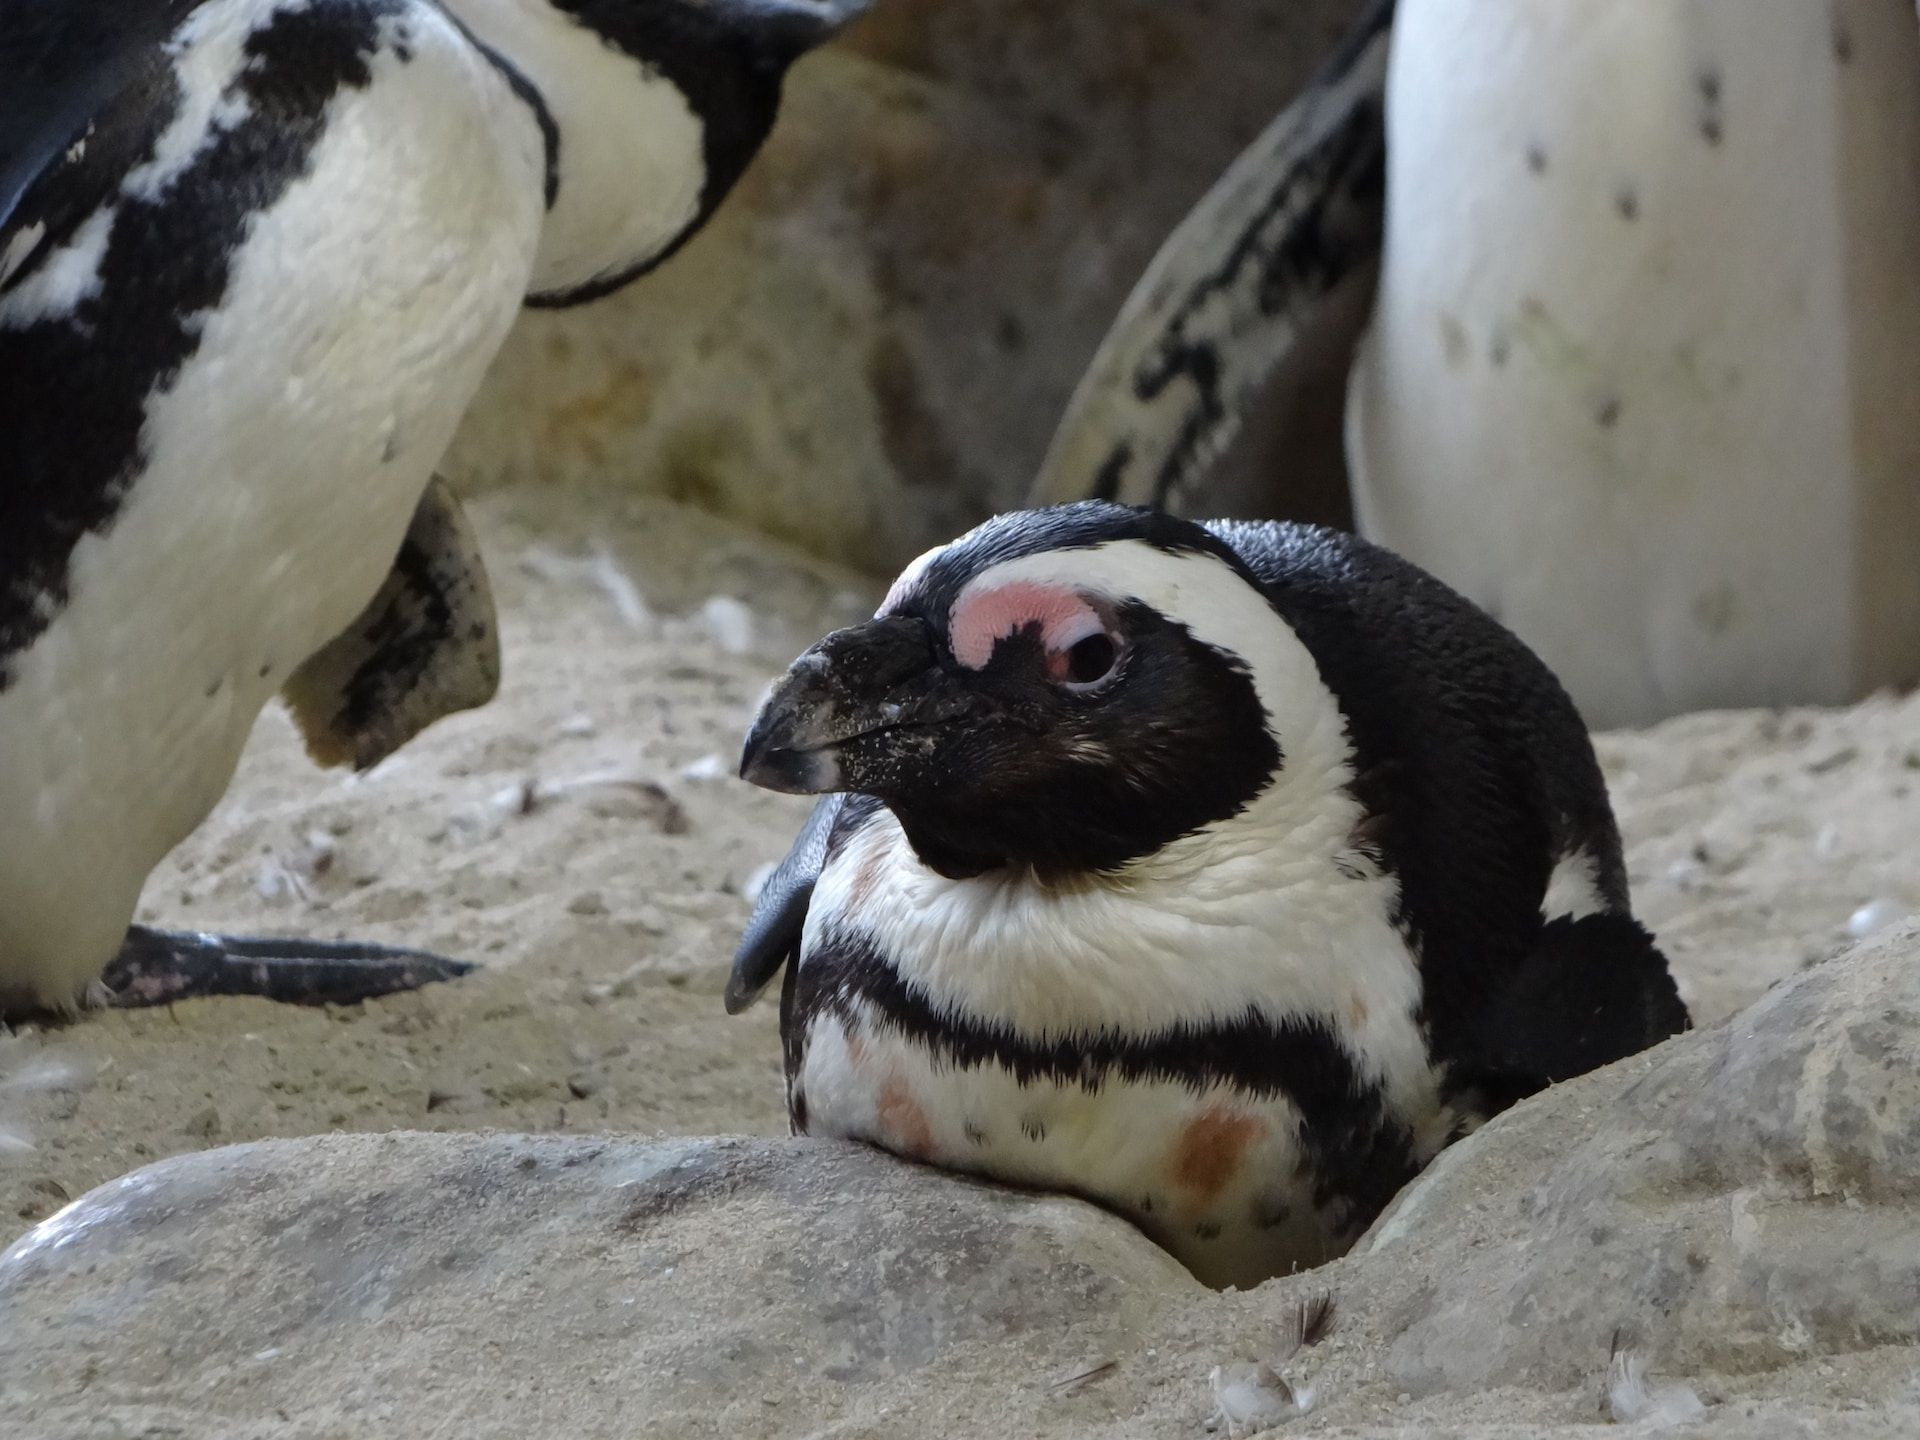 A penguin rests in its enclosure in an aquarium